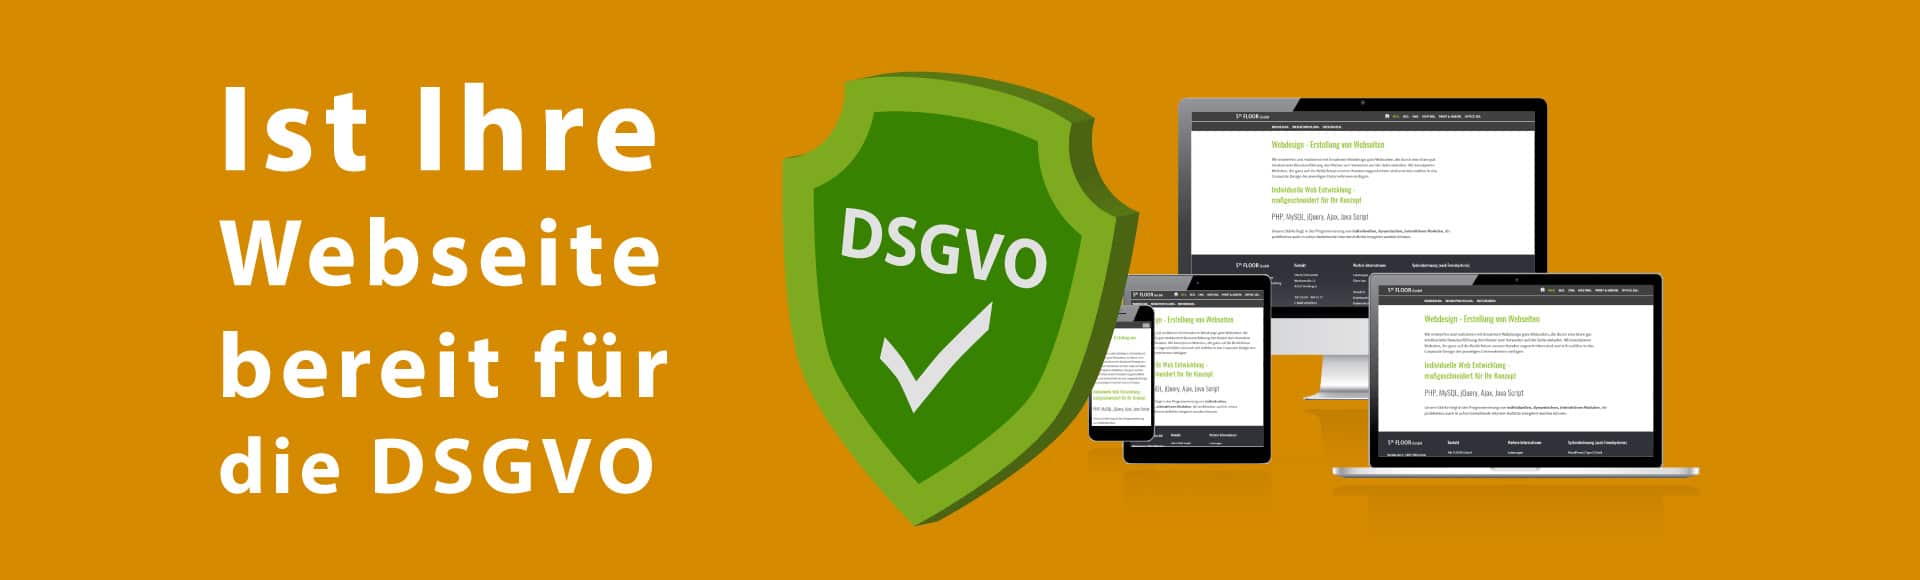 Ist Ihre Webseite bereit für die DSGVO?